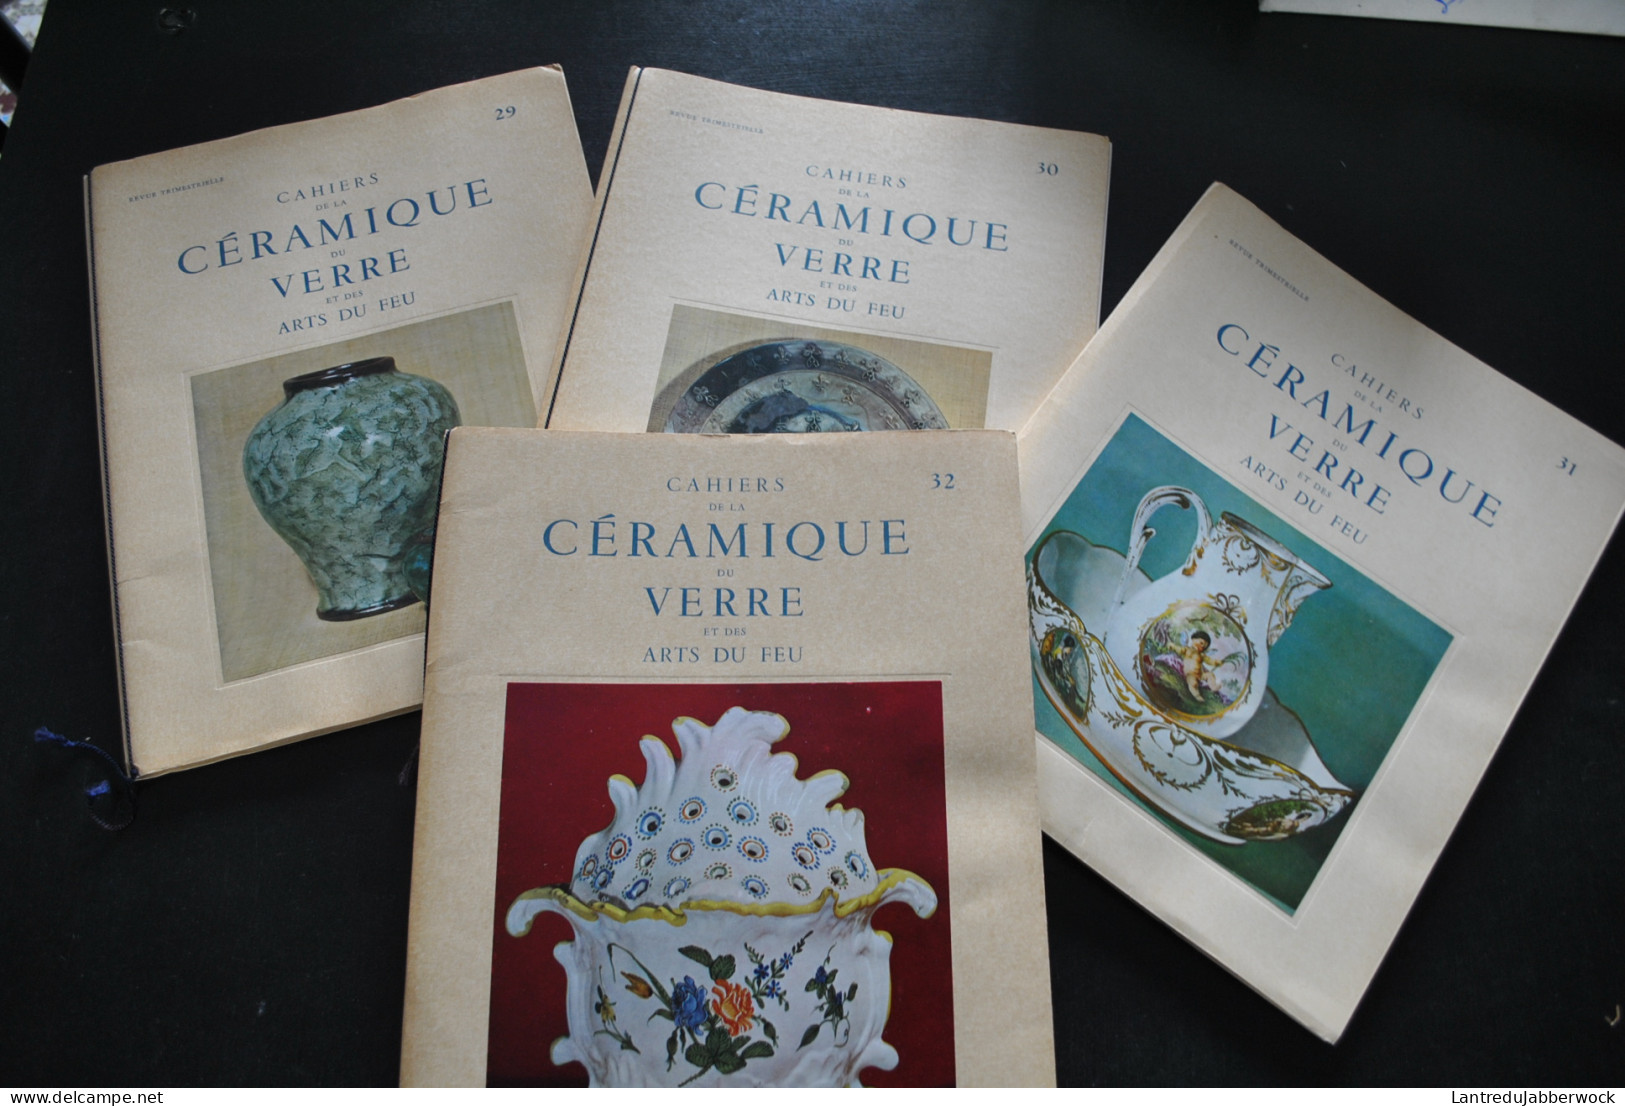 Collection 36 premiers numéros + suppl. Revue Cahiers de la céramique du verre et des arts du feu 1 2 3 Sèvres Limoges